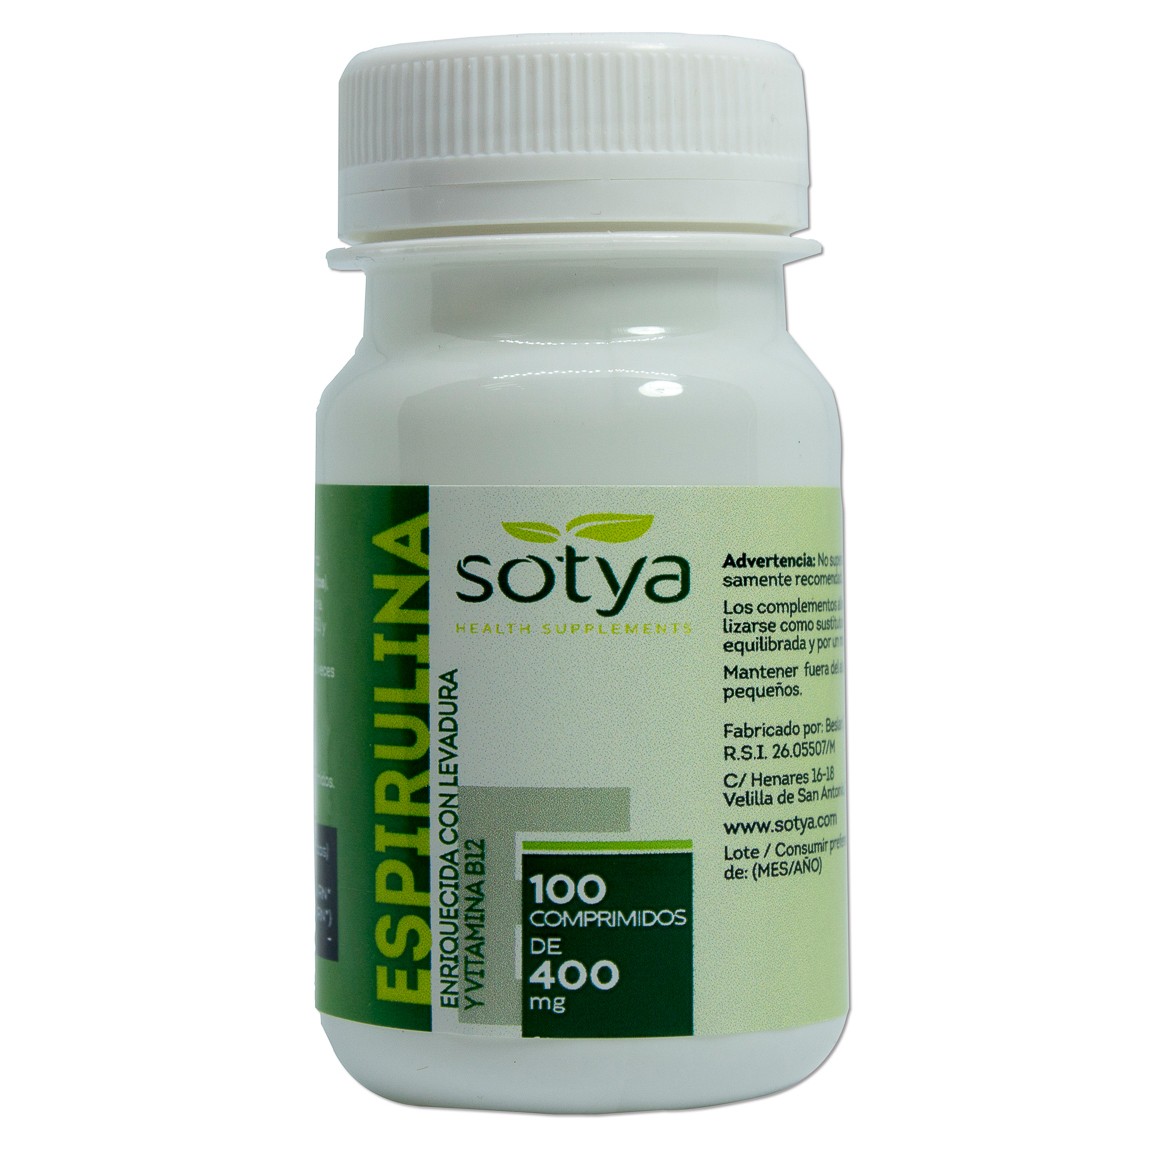 Sotya espirulina 100 comprimidos de 400mg